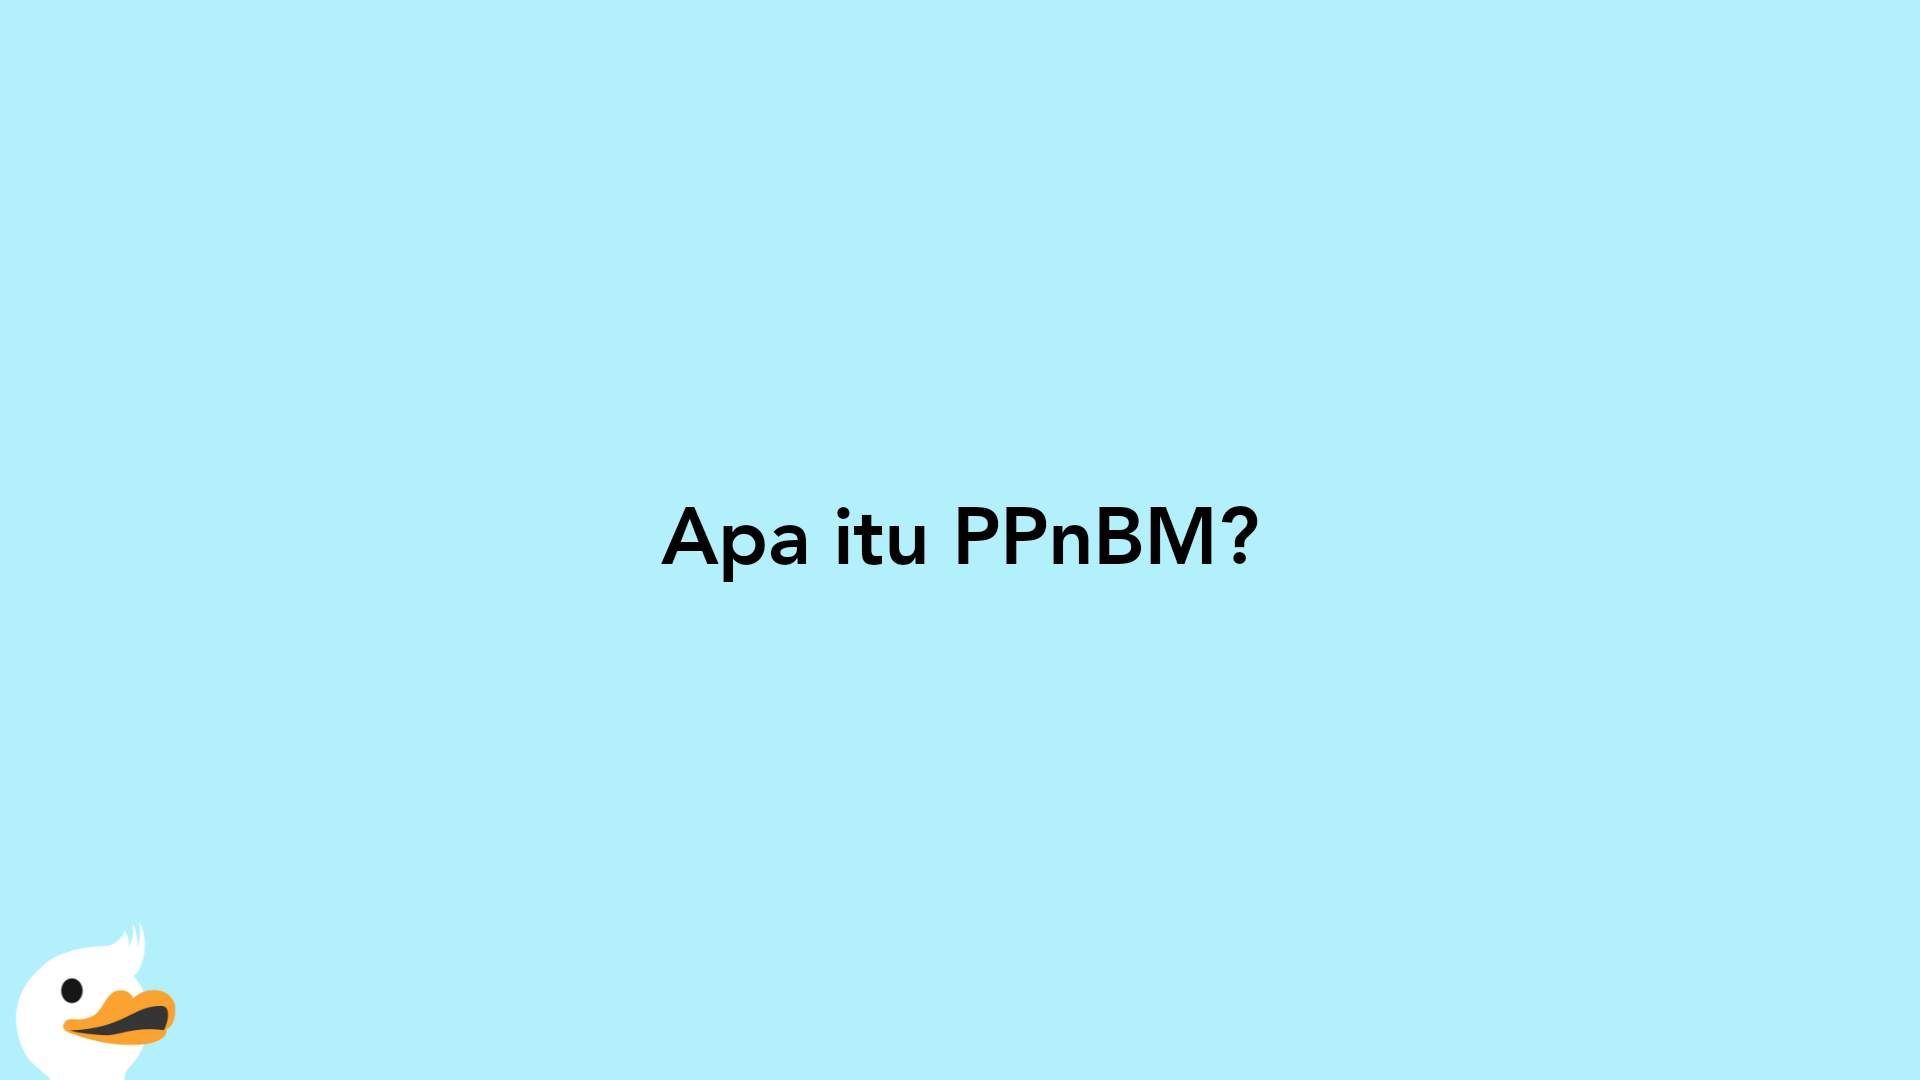 Apa itu PPnBM?